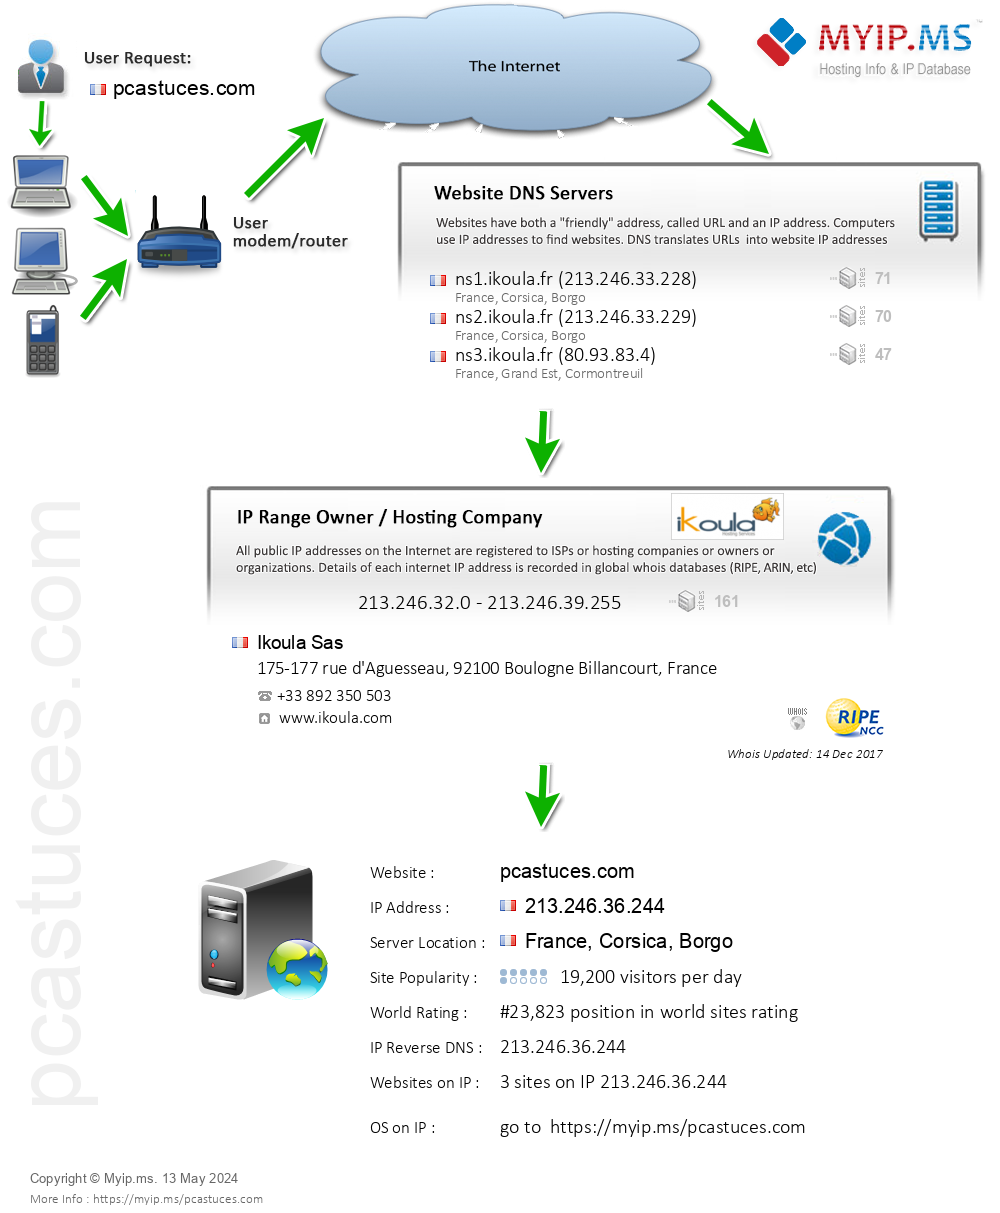 Pcastuces.com - Website Hosting Visual IP Diagram